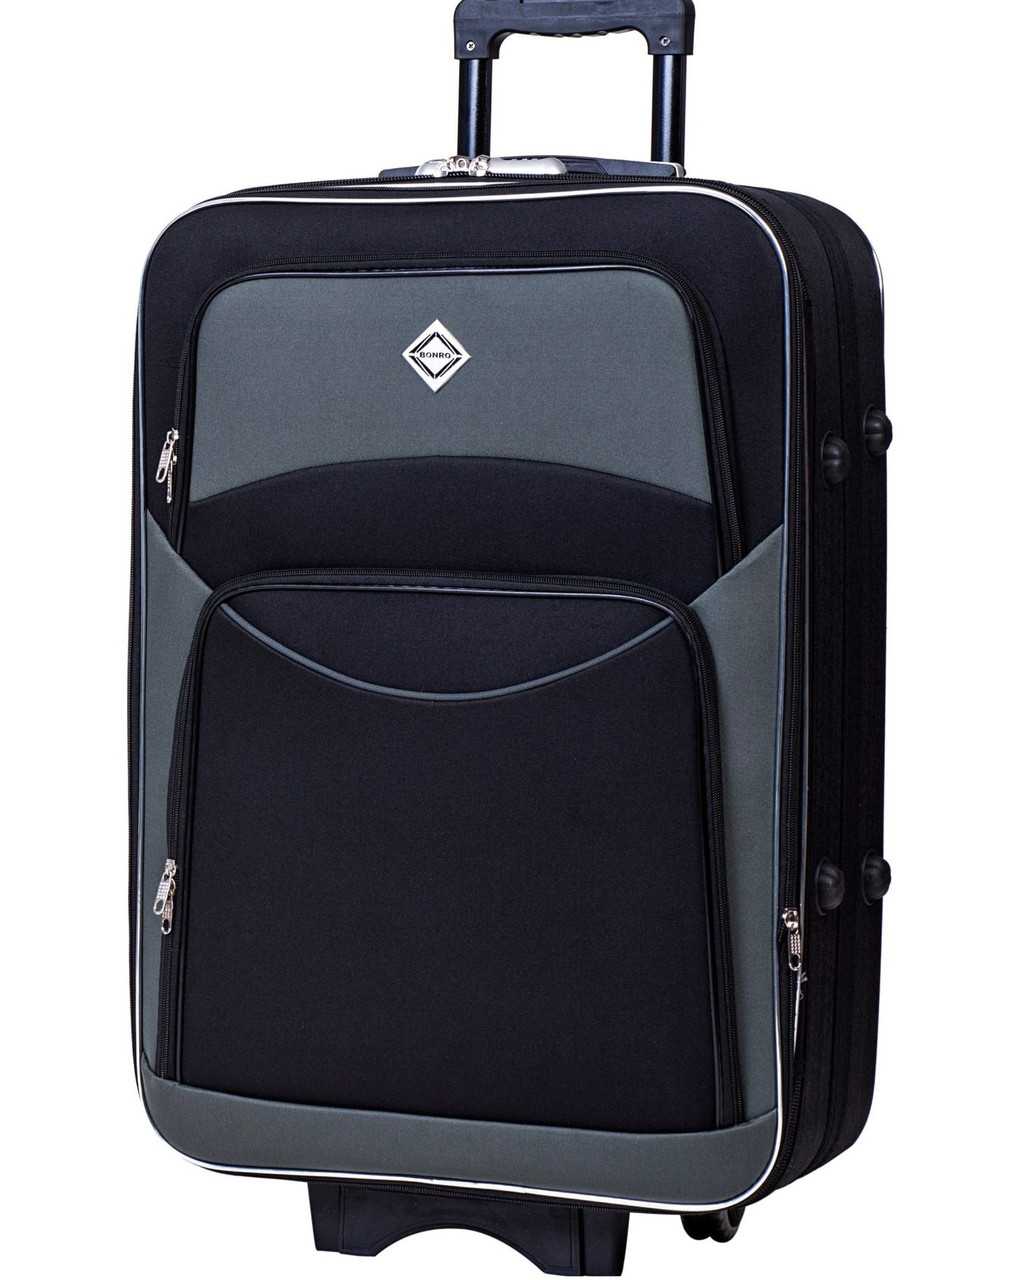 Дорожня валіза середнього розміру Bonro Style колір чорно-сіра